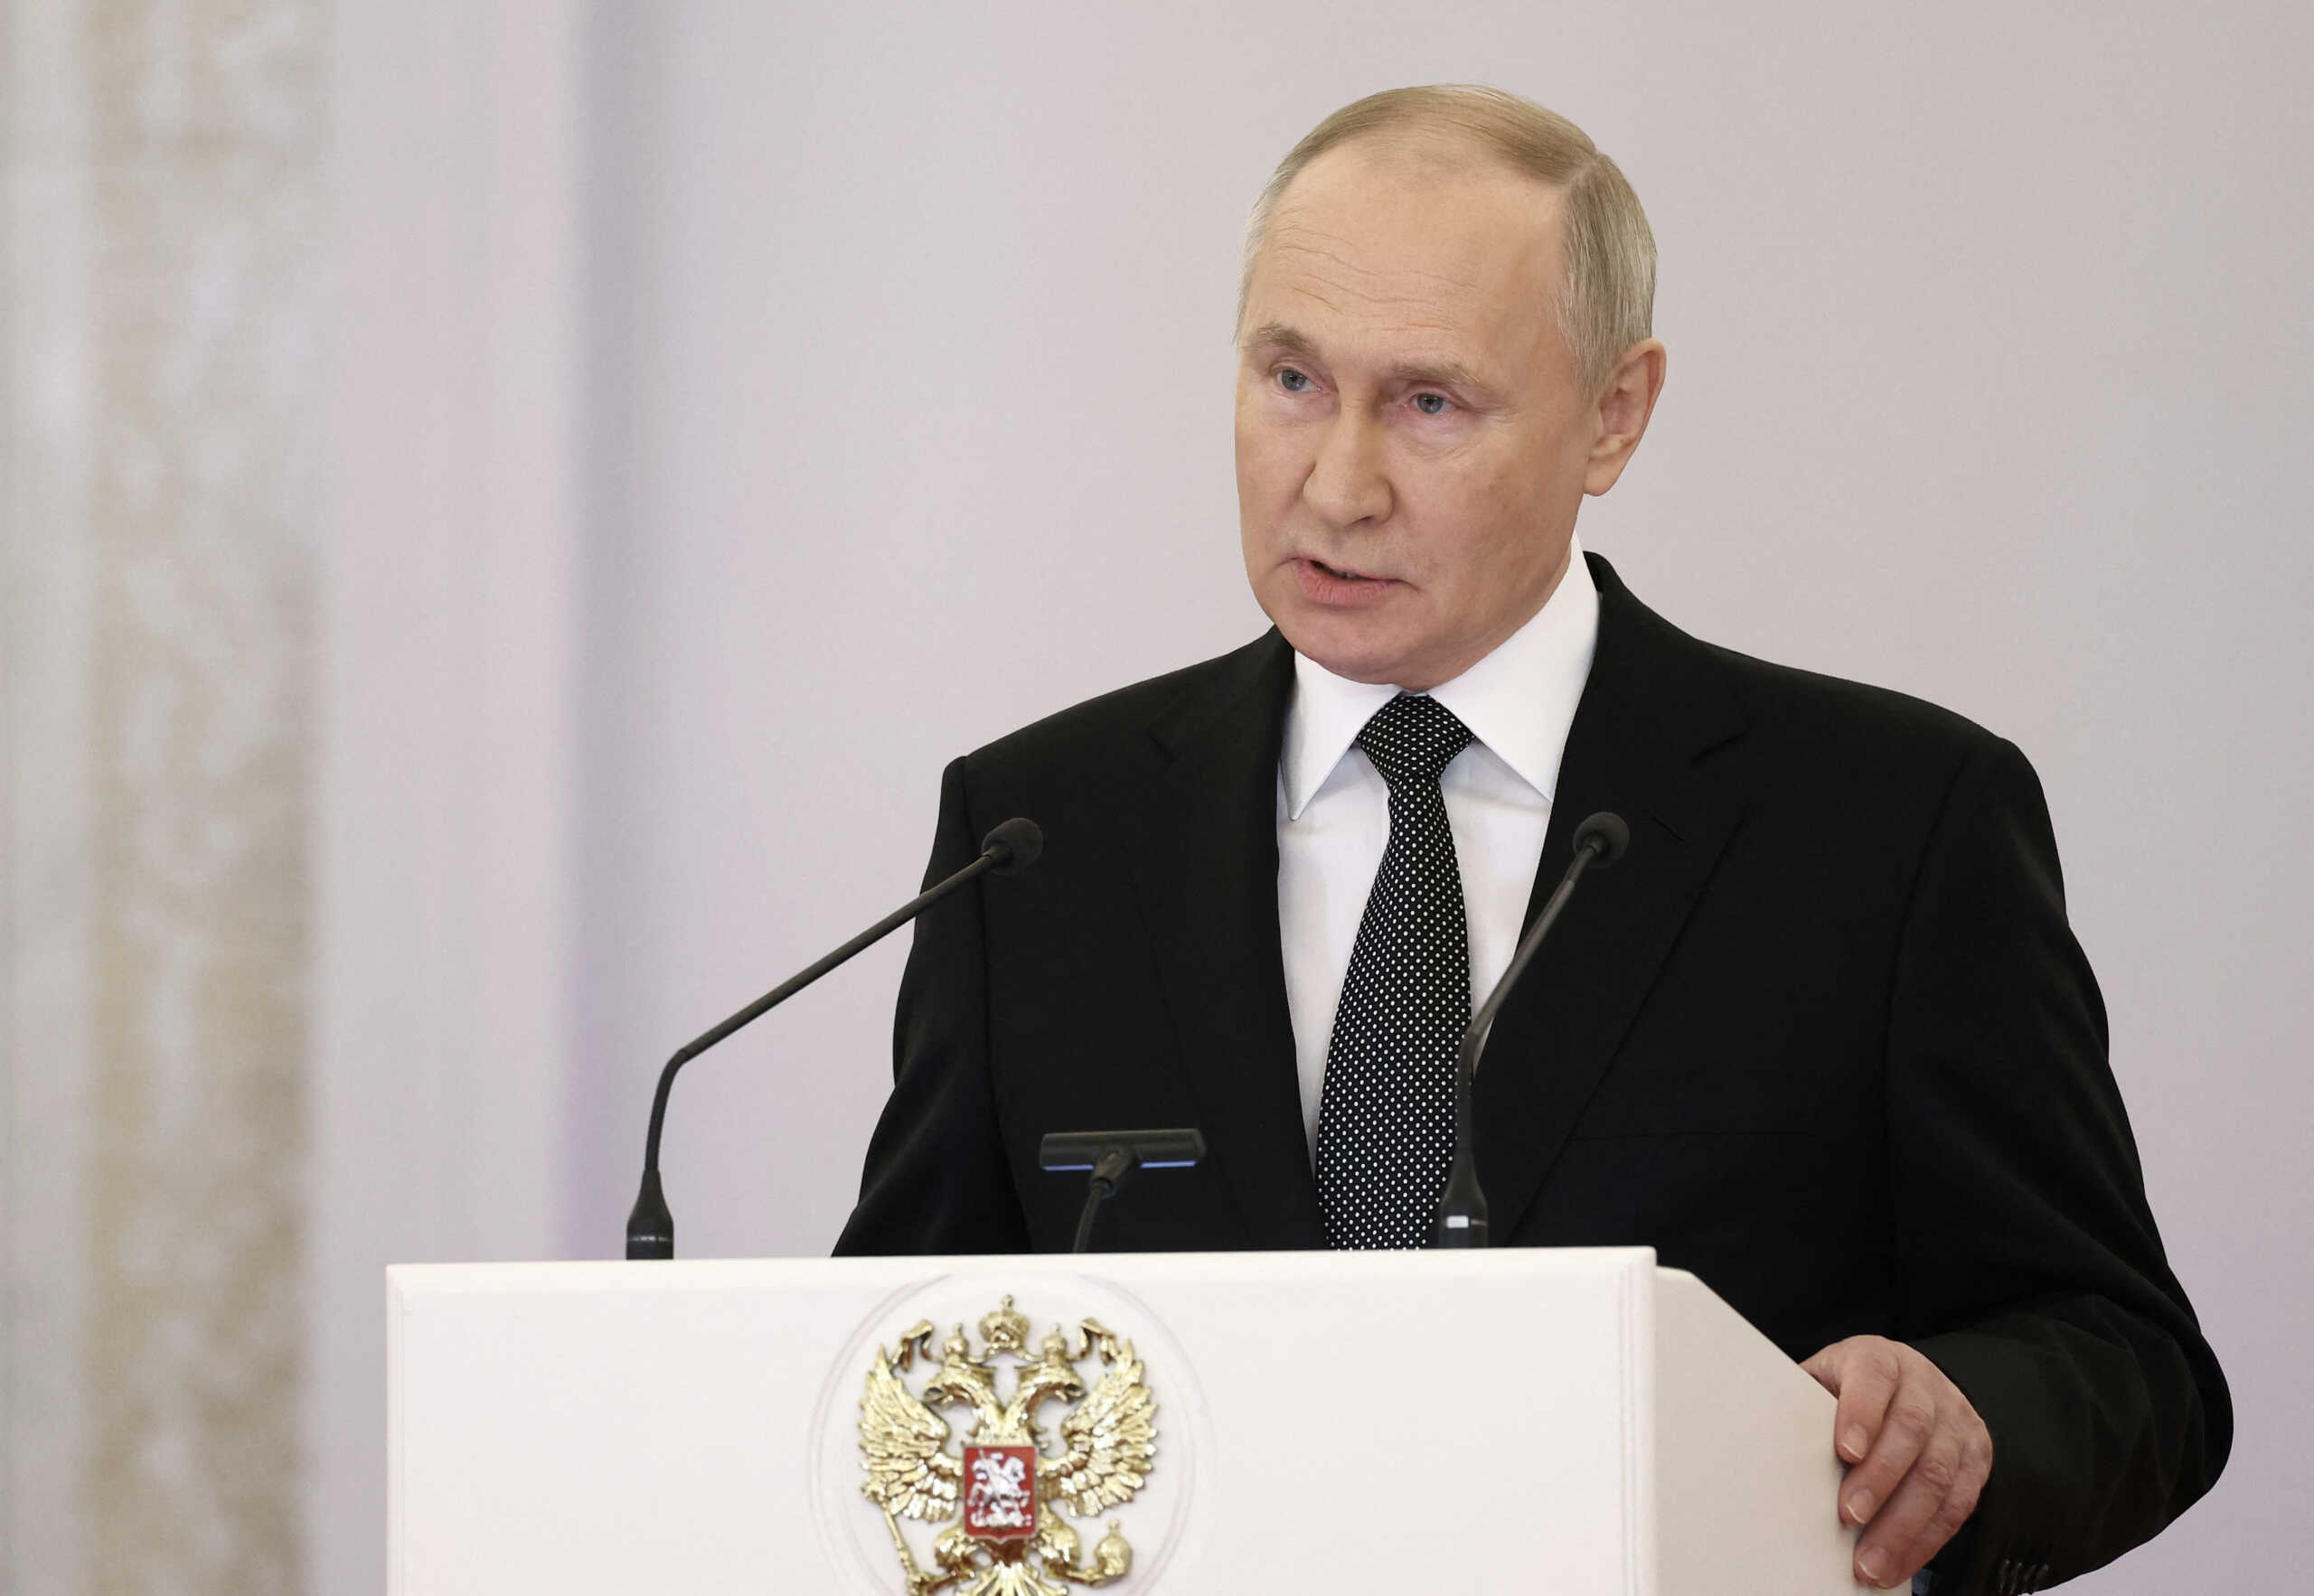 Ο Πούτιν ανακοίνωσε ότι θα είναι και πάλι υποψήφιος για πρόεδρος της Ρωσίας